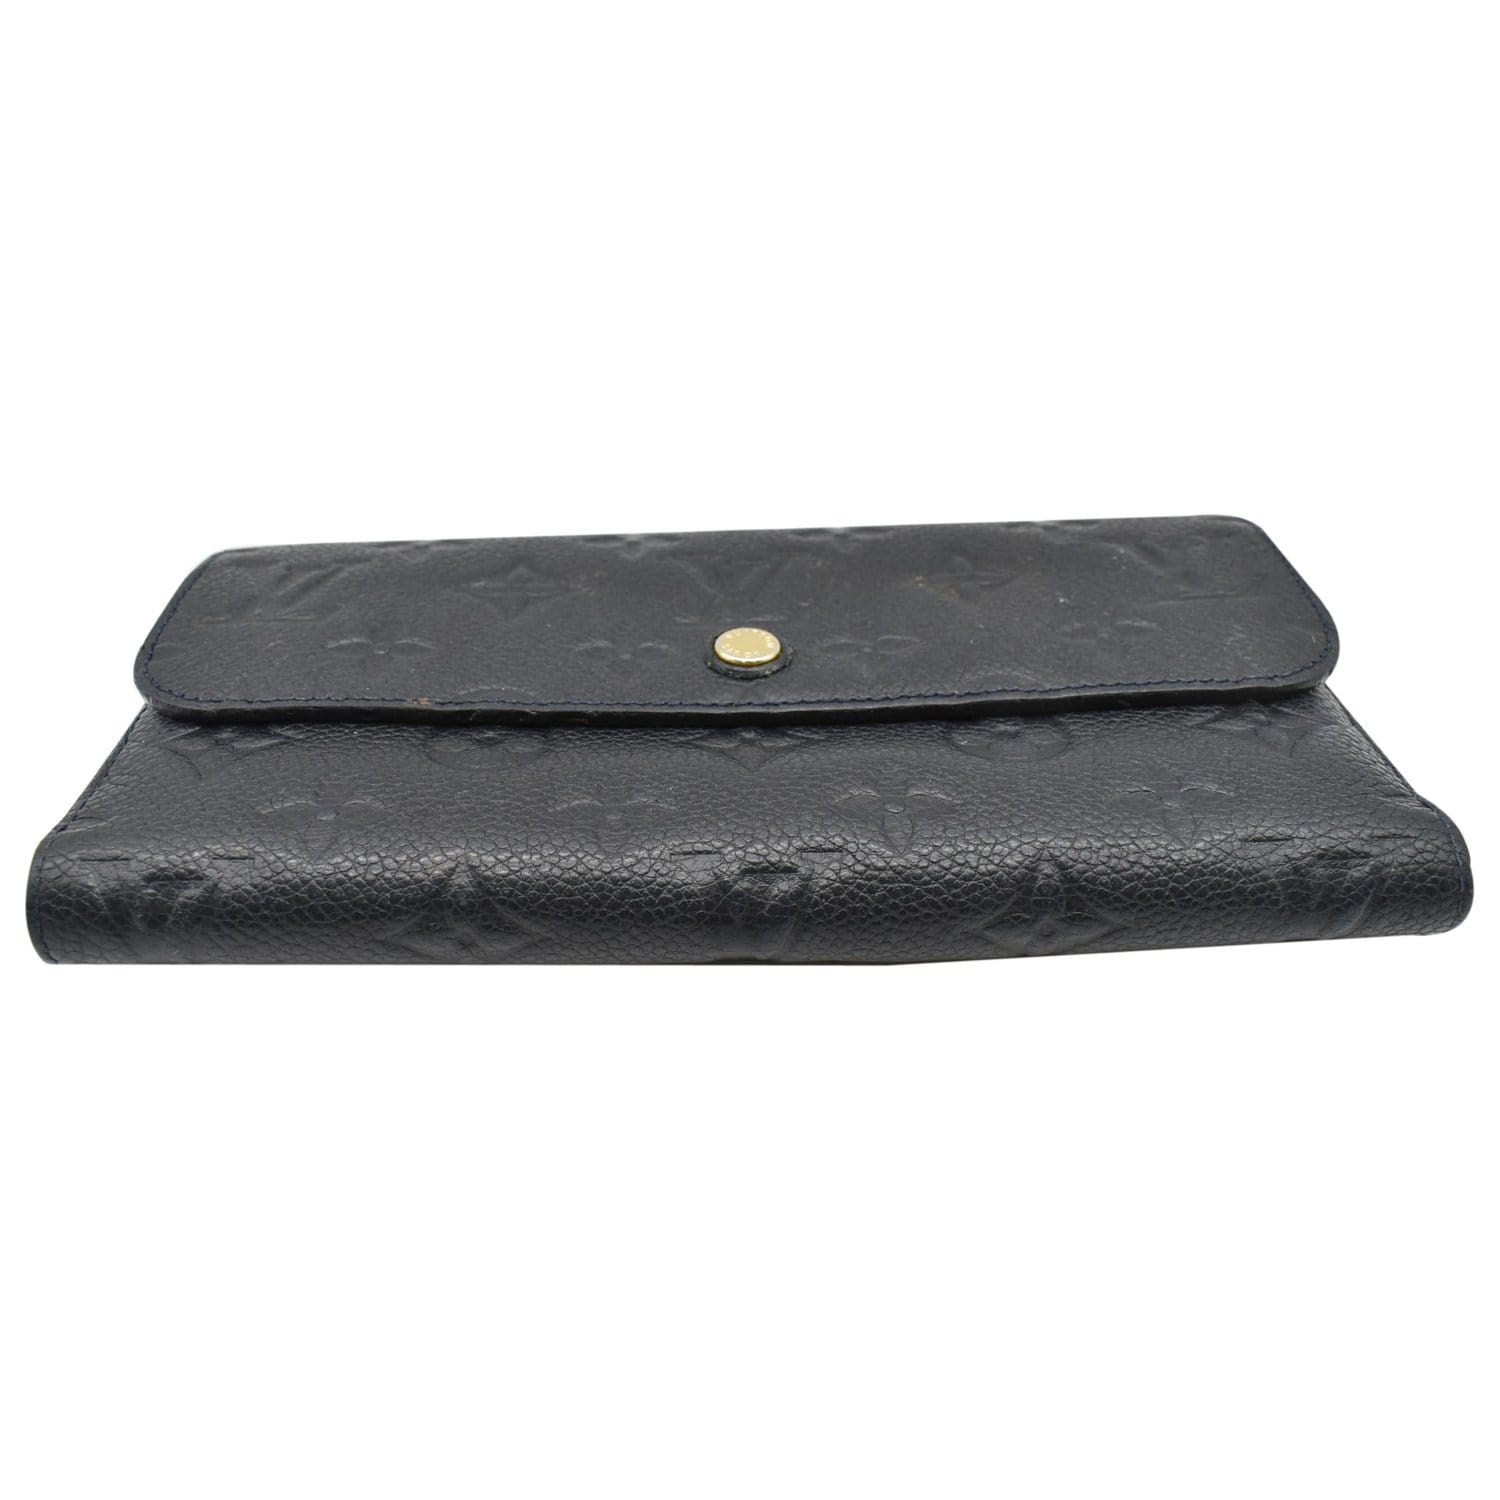 Louis Vuitton Bifold Wallet - Black Wallets, Accessories - LOU808453